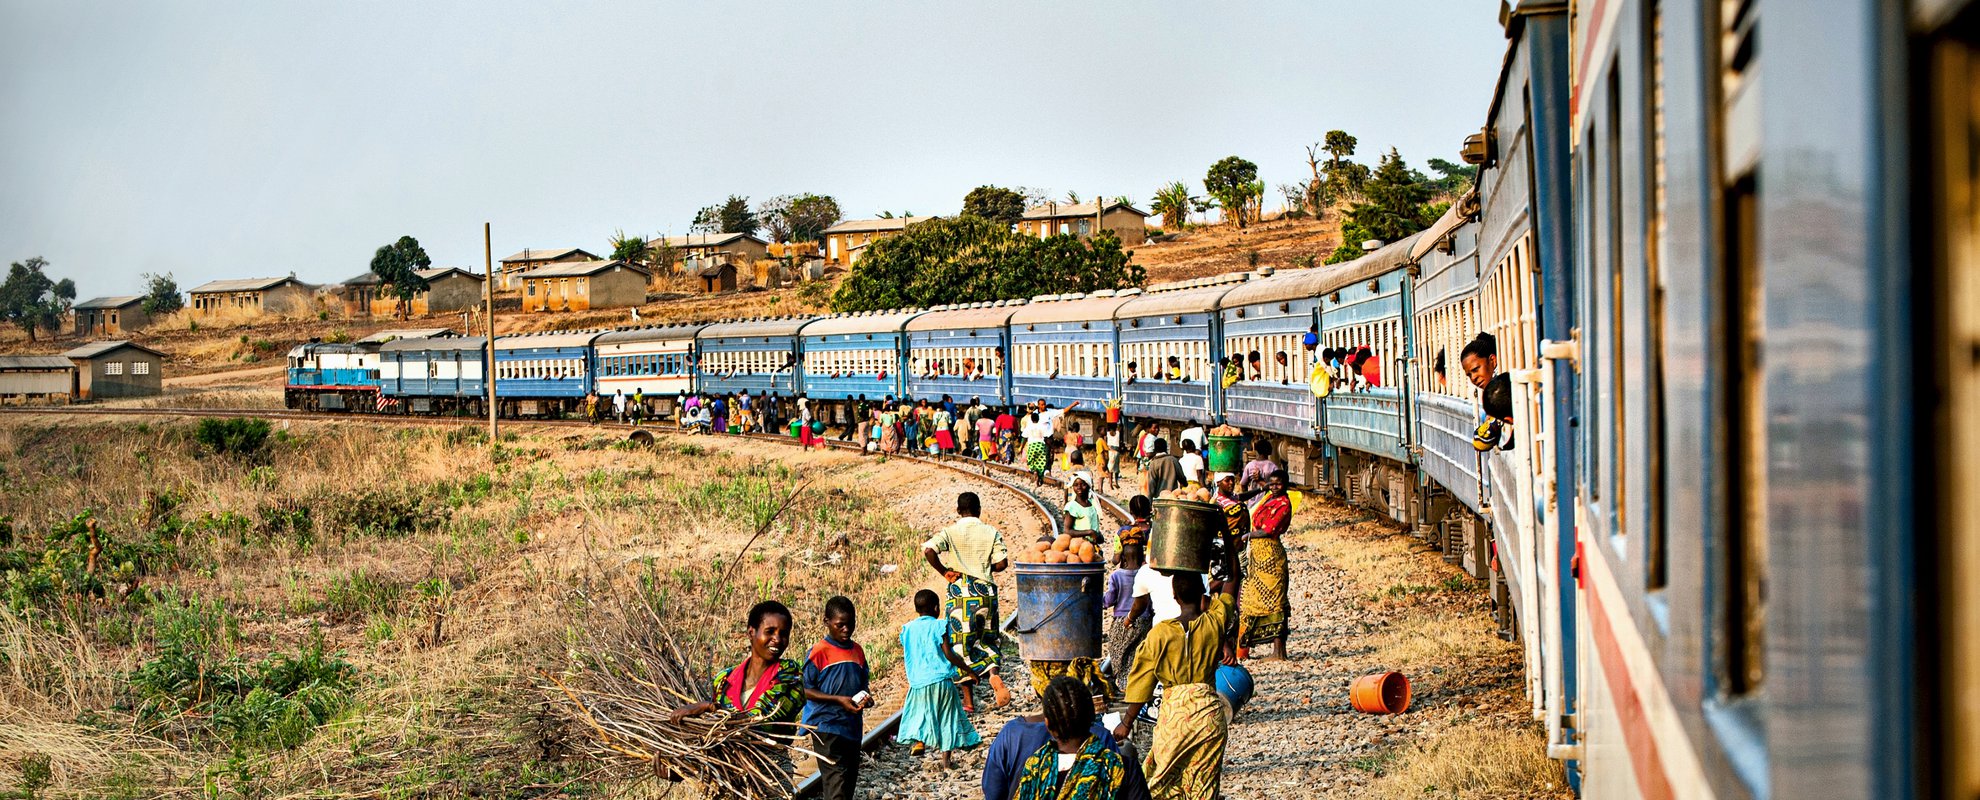 Tazara tåget som tar dig genom delar av Zambia och Tanzania